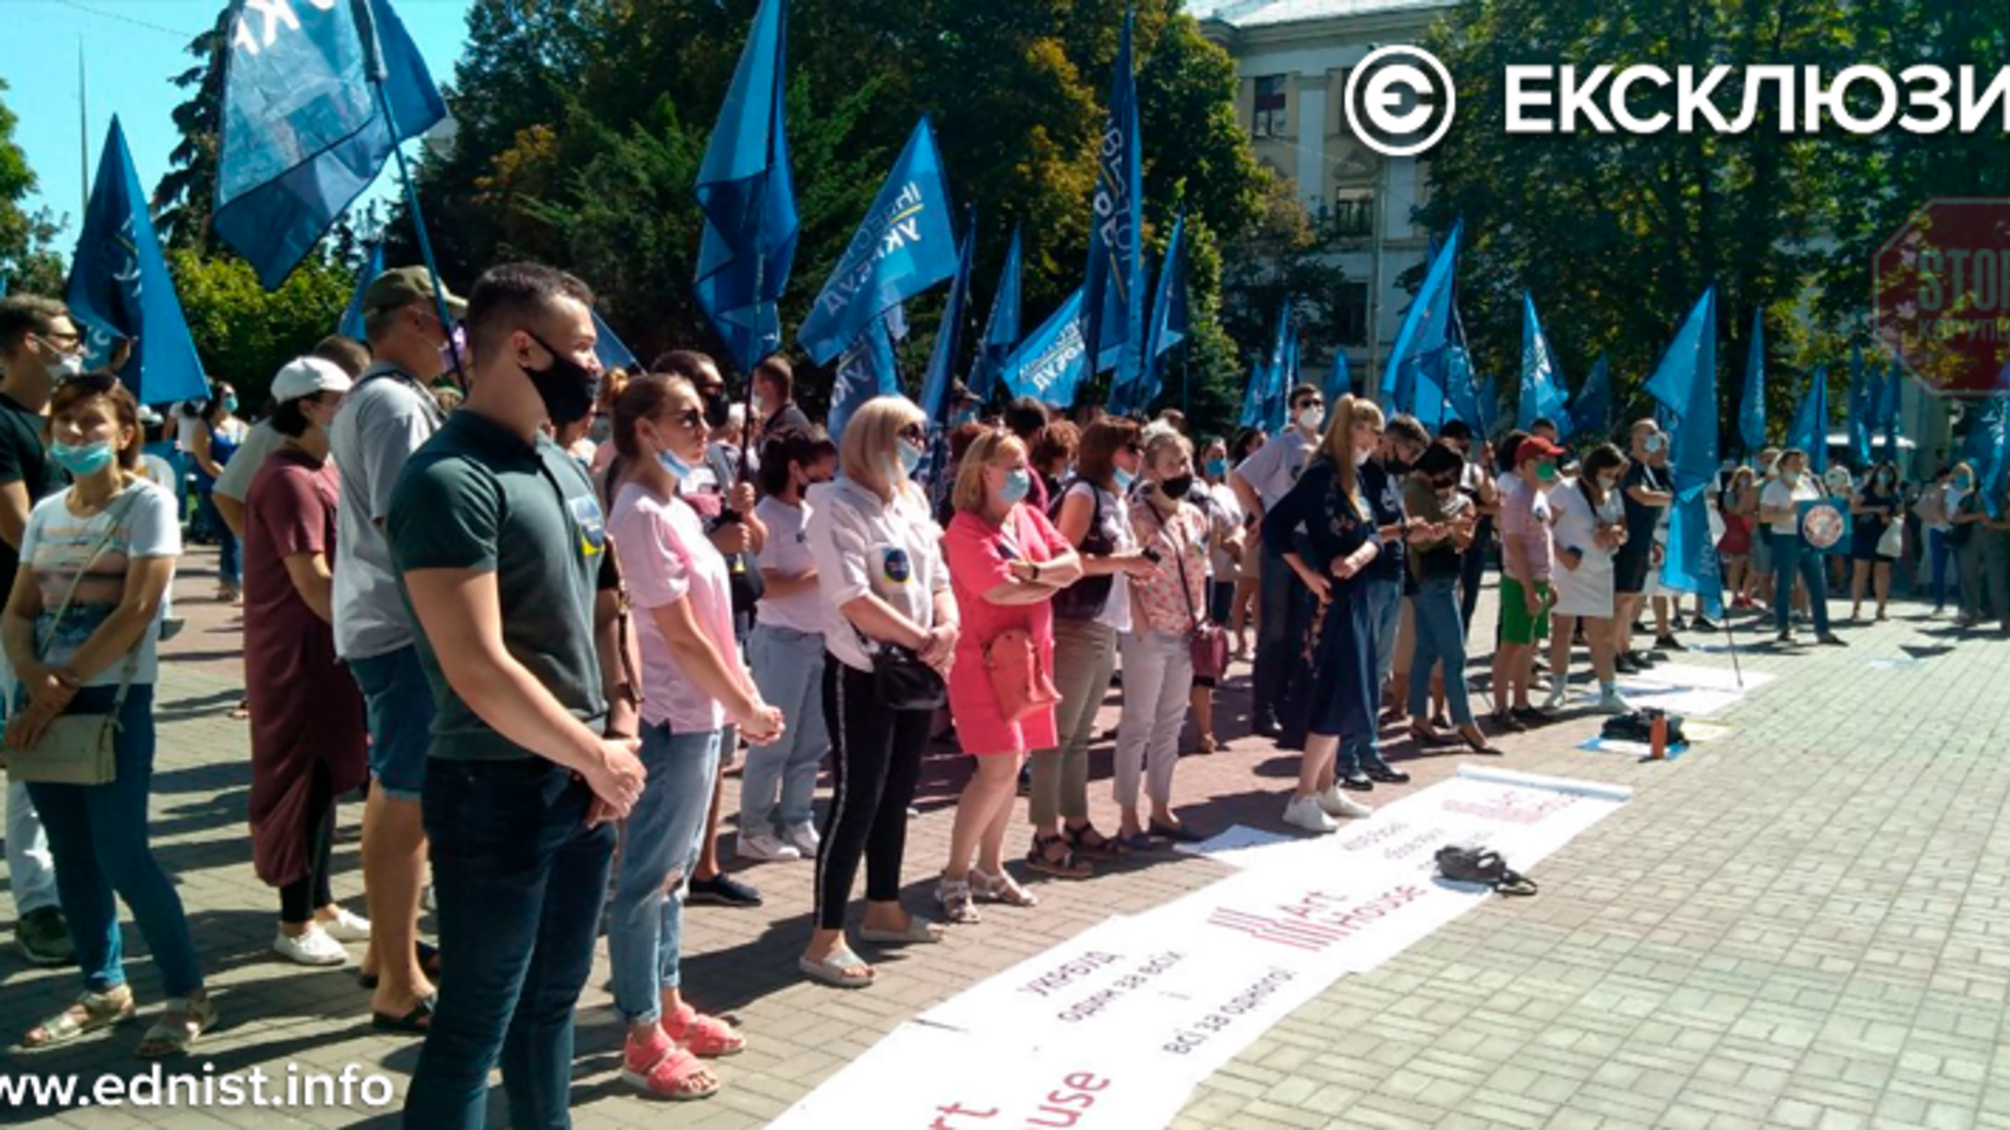 Вкладники 'Укрбуду' вийшли на акцію протесту (фото, відео)